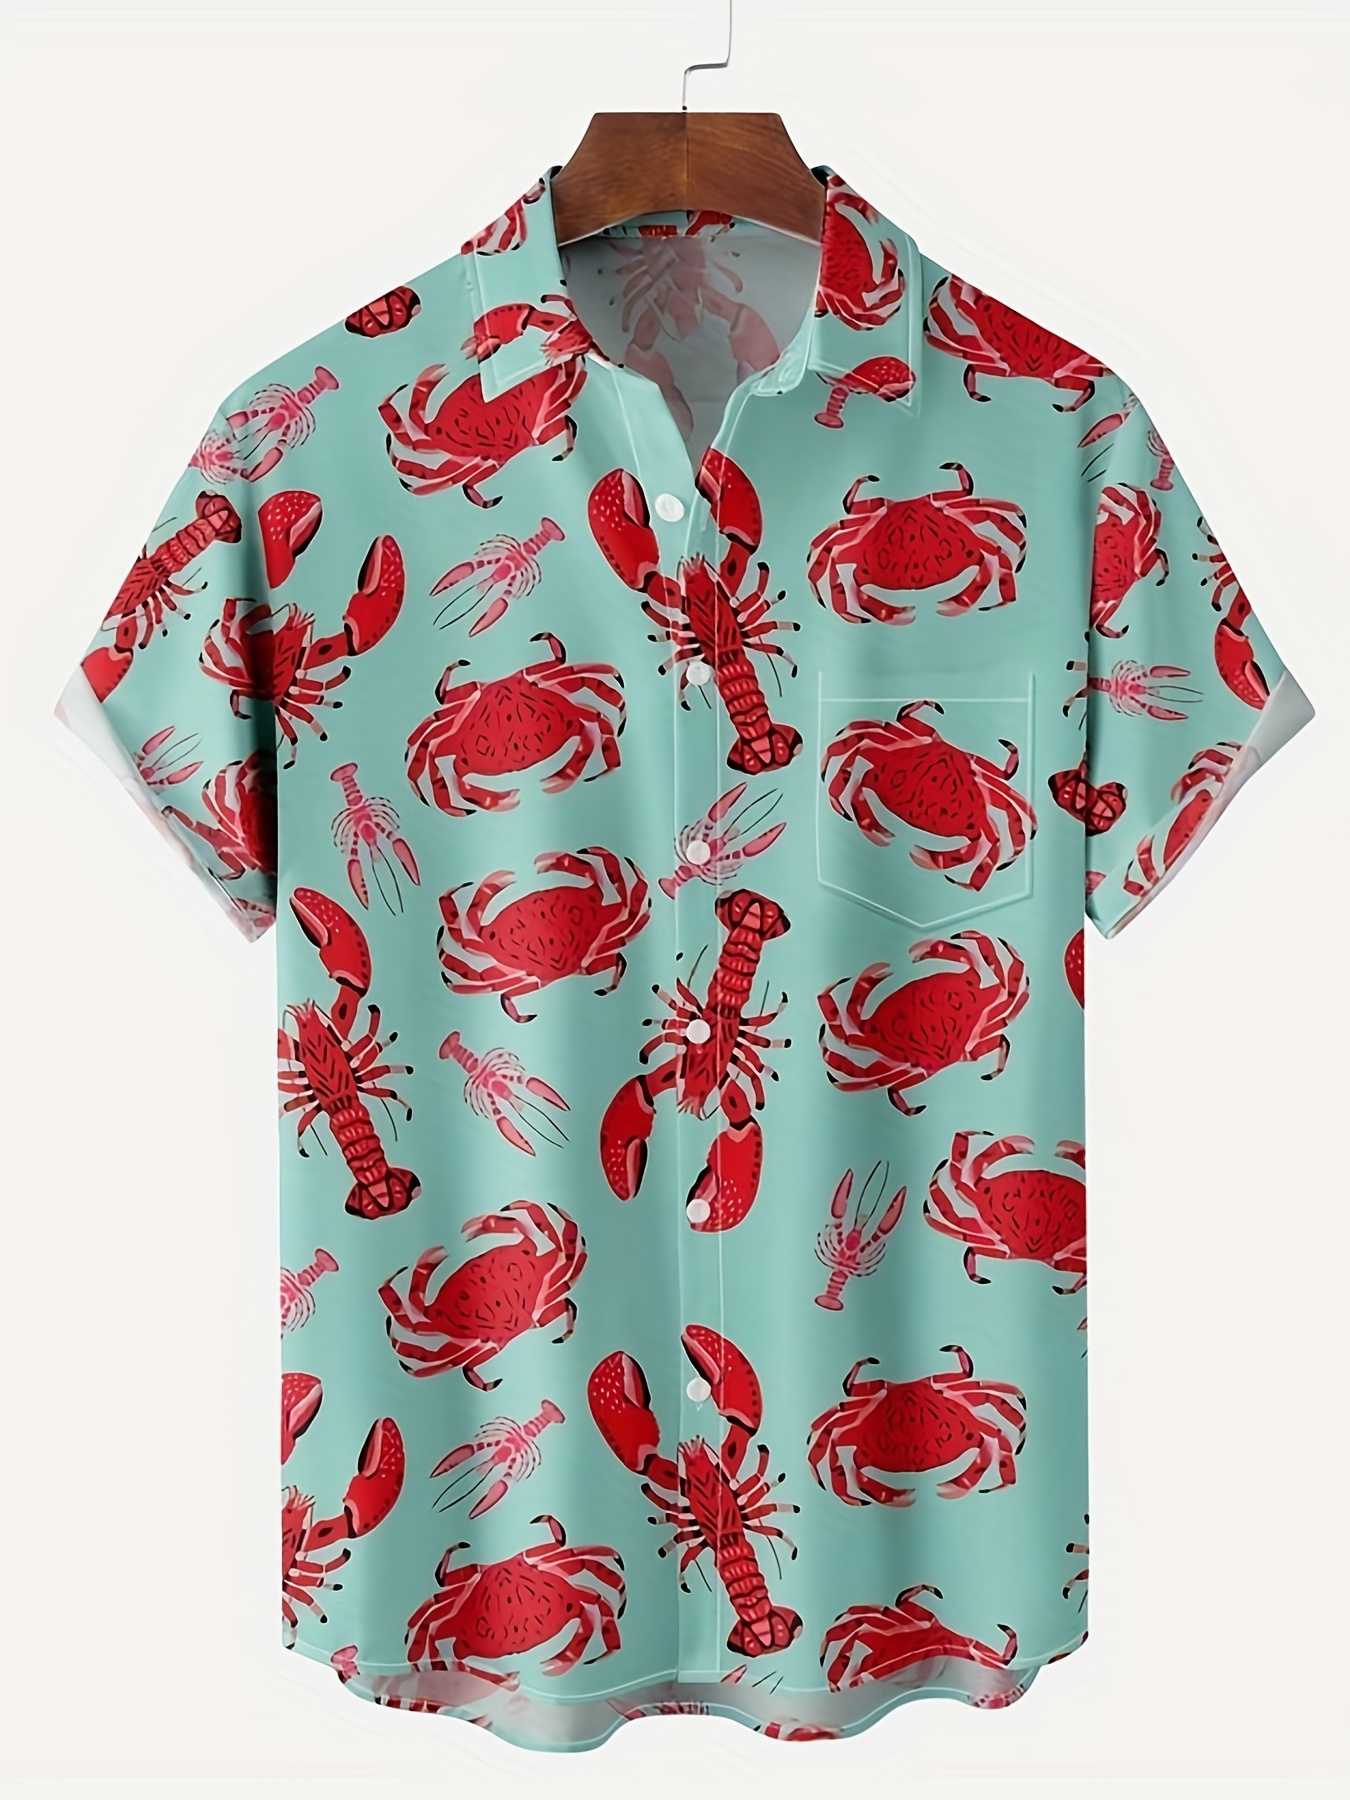 Print Lapel Neck Short Sleeve Shirt, Men's Pocket Slight Stretch Casual Summer Lobster Shirt Vacation Resort Tops For Men